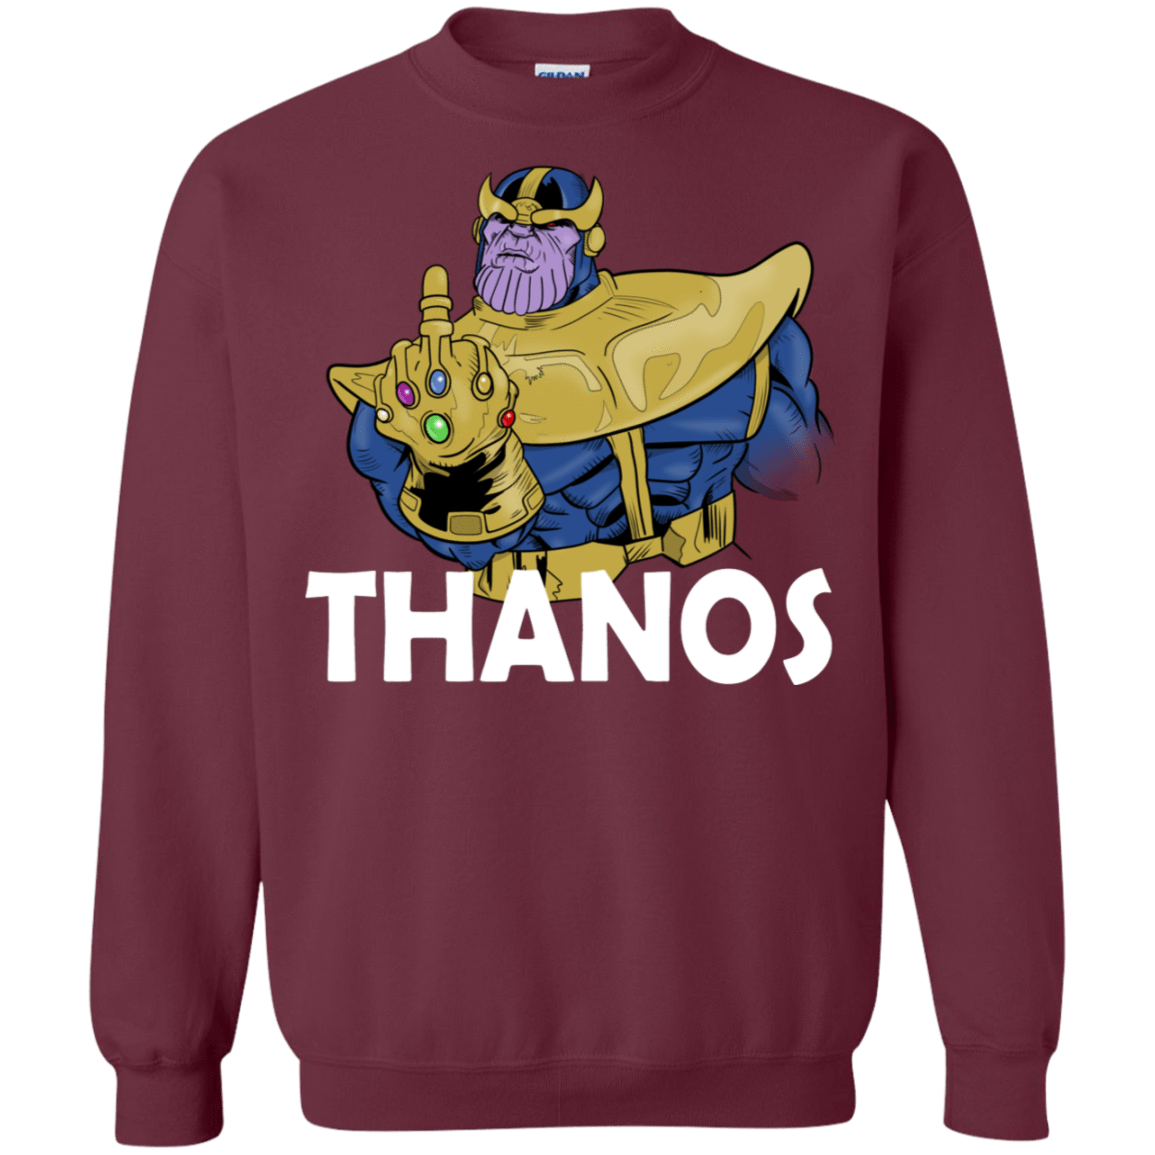 Sweatshirts Maroon / S Thanos Cash Crewneck Sweatshirt